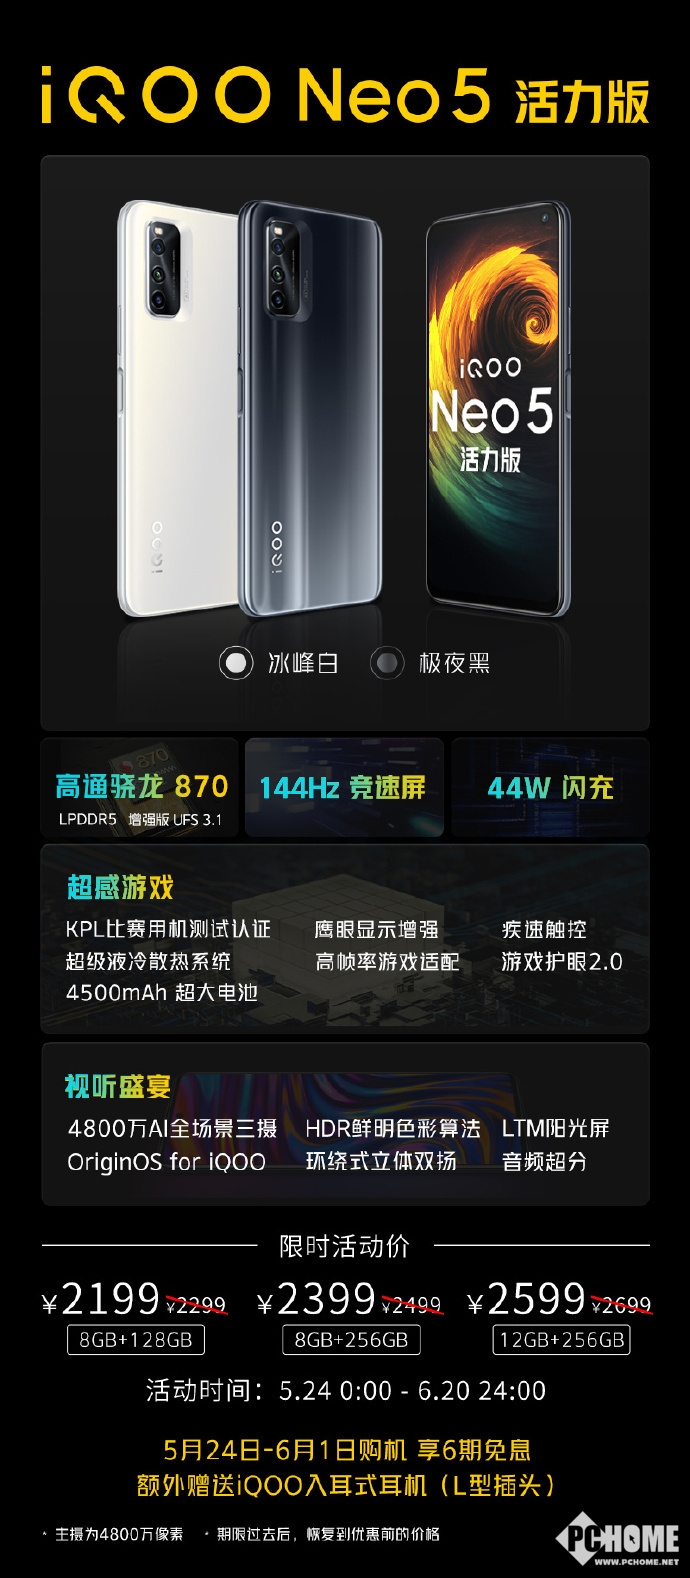 iQOO Neo5 活力版全面开售 首发2199元到手